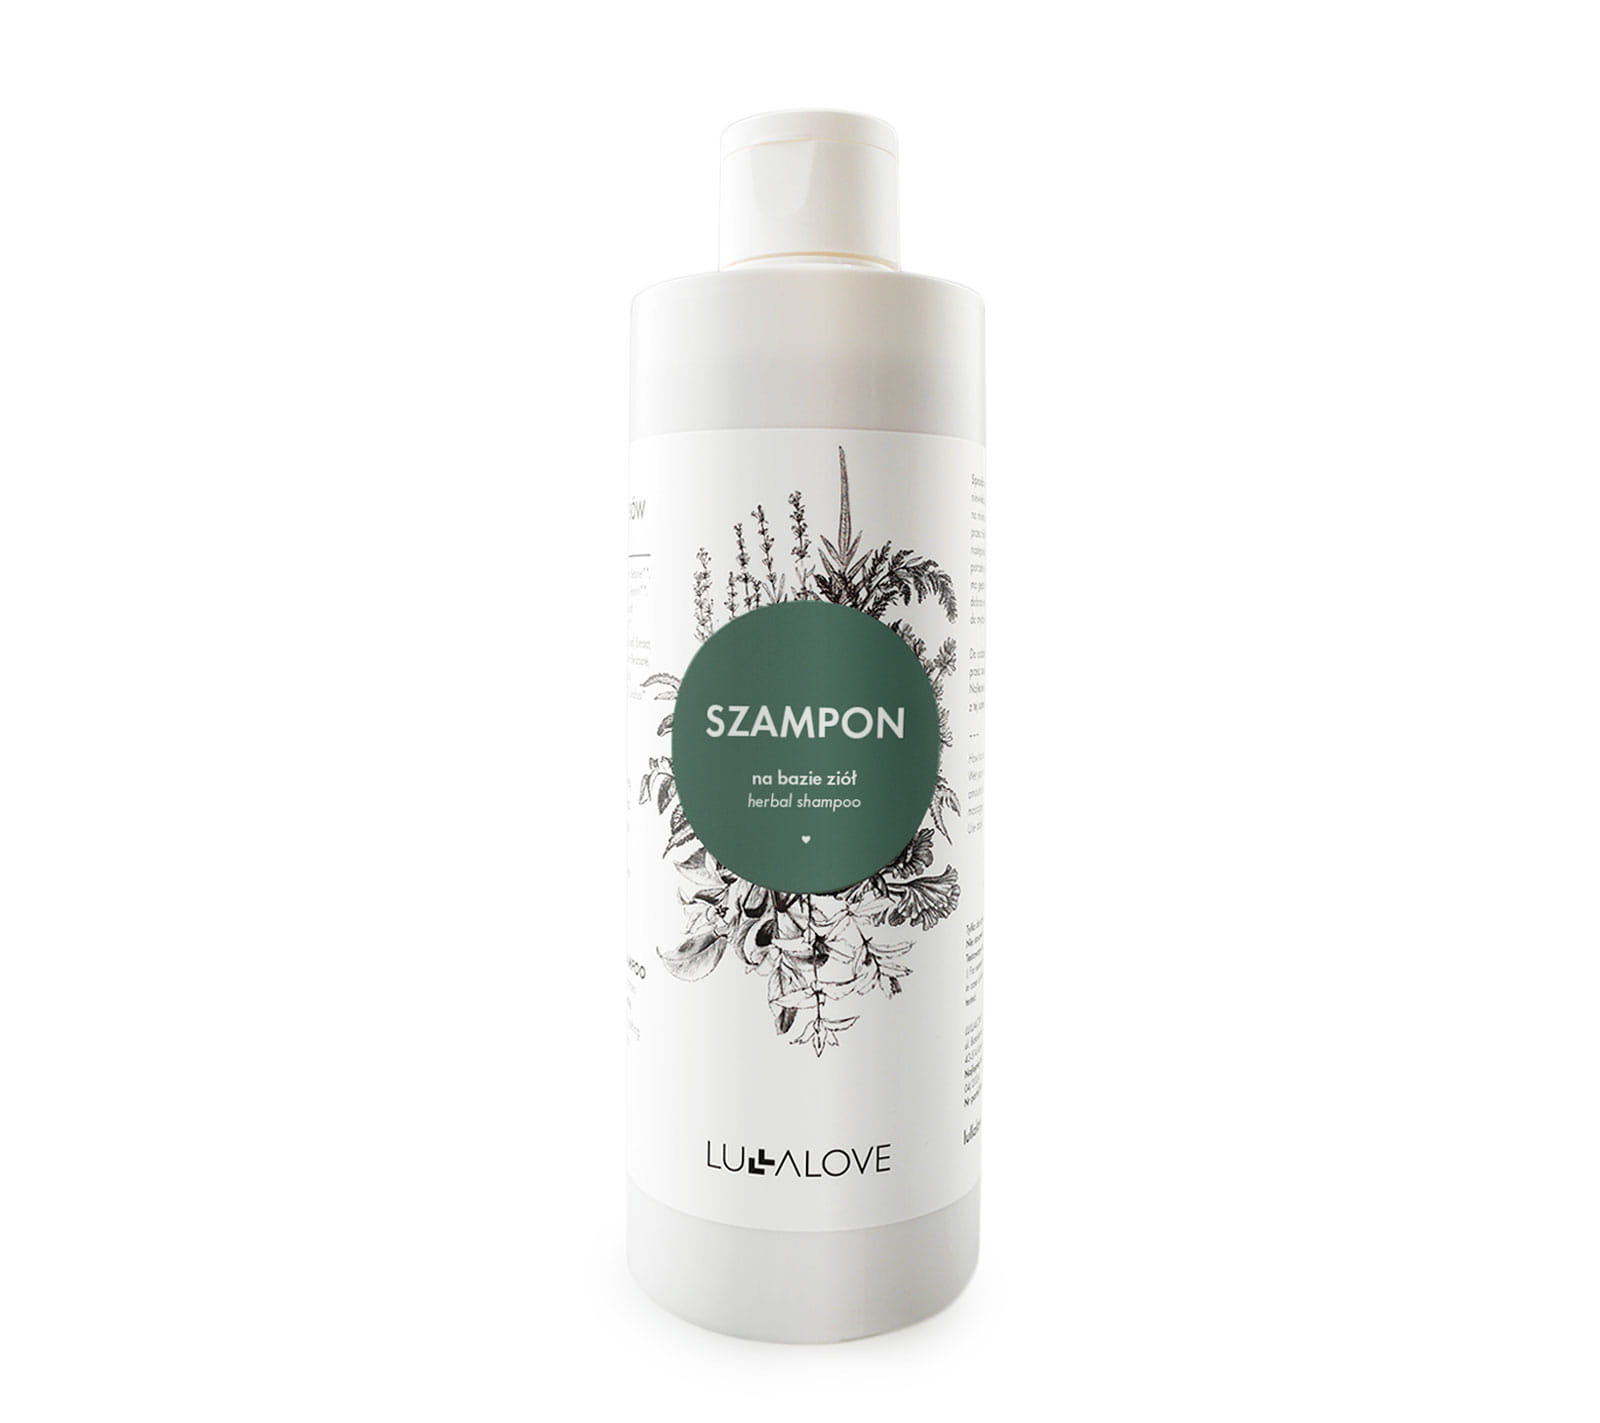 kemon actyva nuova fibra shampoo szampon odbudowujący 250 ml